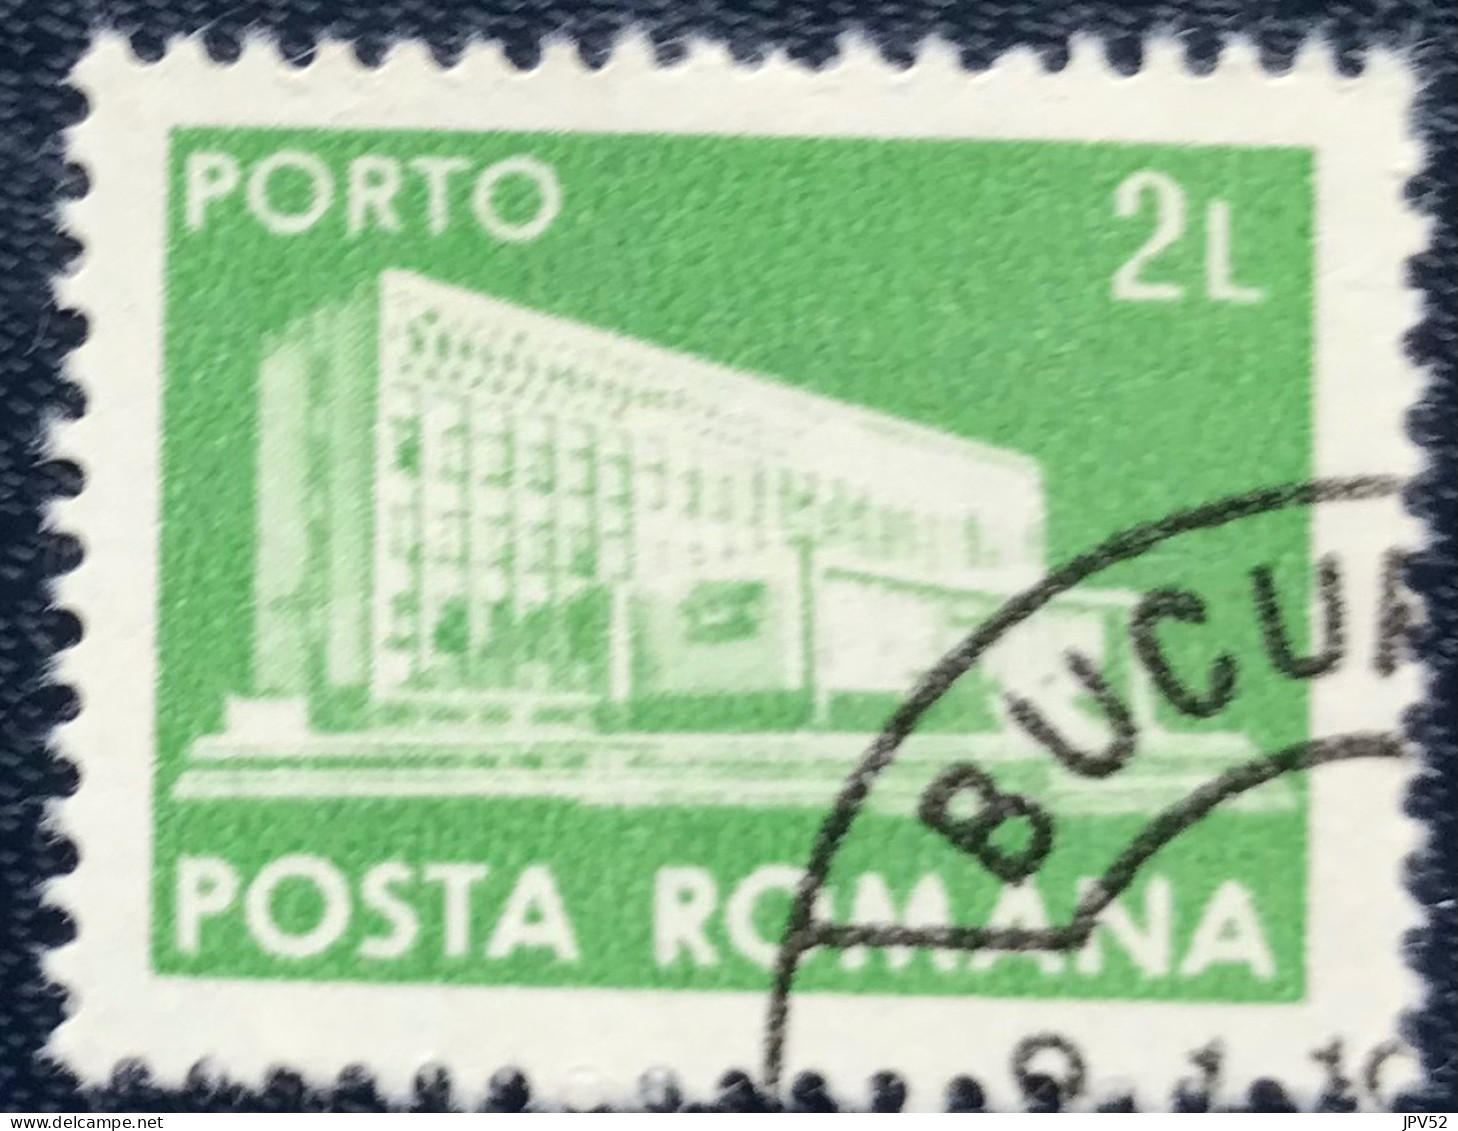 Romana - Roemenië - C14/53 - 1982 - (°)used - Michel 128 - Postkantoor - Impuestos